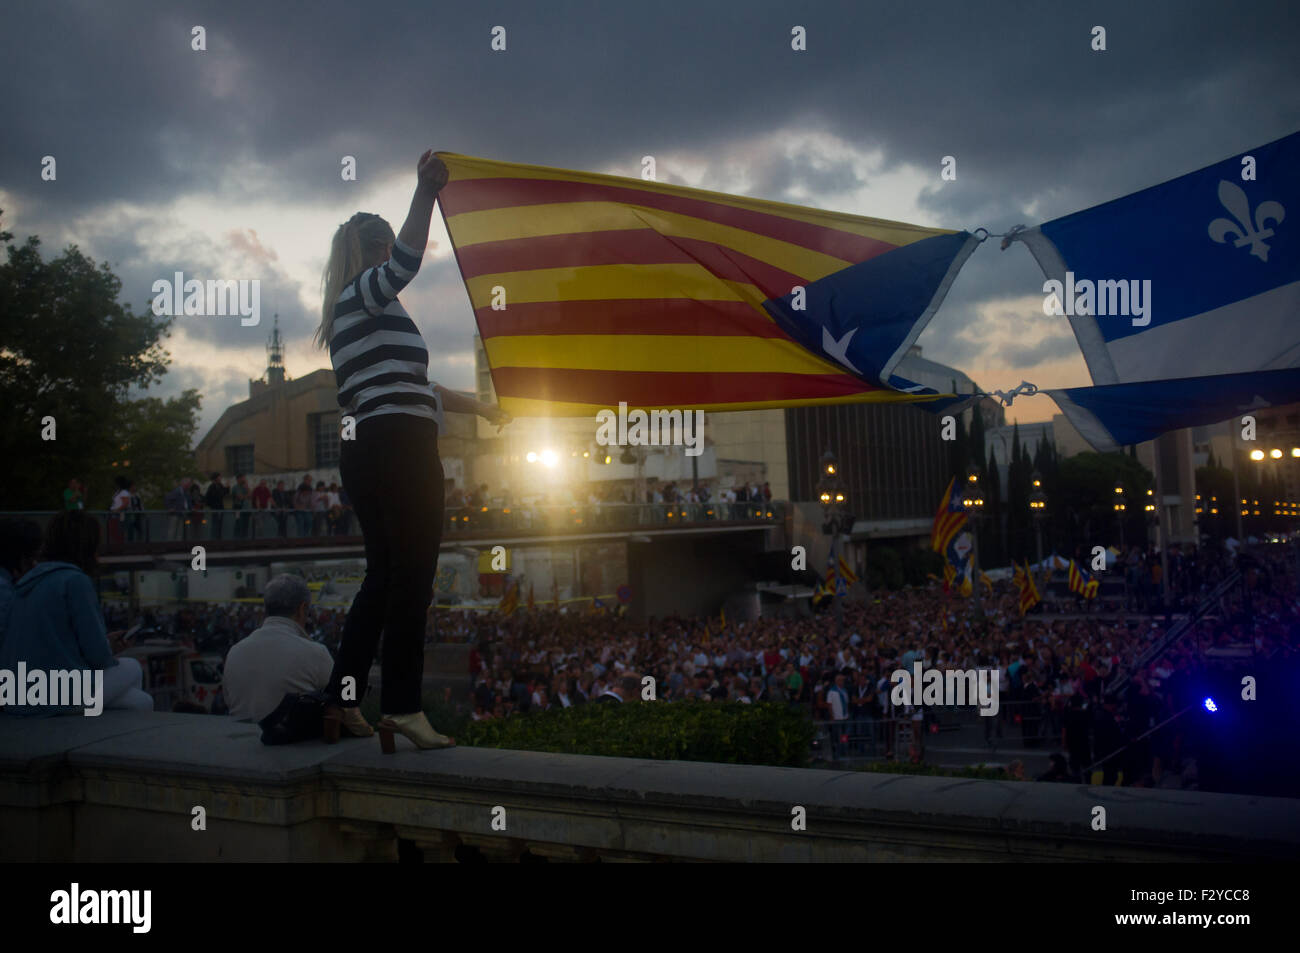 Barcelone, Catalogne, Espagne. 25 Septembre, 2015. Une femme tient un estelada drapeau indépendantiste (catalan) et un drapeau du Québec au cours de la dernière campagne de rallye 'Junts pel Si' (ensemble pour Oui) à Barcelone le 25 septembre, 2015. Dimanche prochain auront lieu des élections régionales en Catalogne. Les sondages indiquent que l'indépendance parties pourraient obtenir la majorité absolue. Crédit : Jordi Boixareu/ZUMA/Alamy Fil Live News Banque D'Images